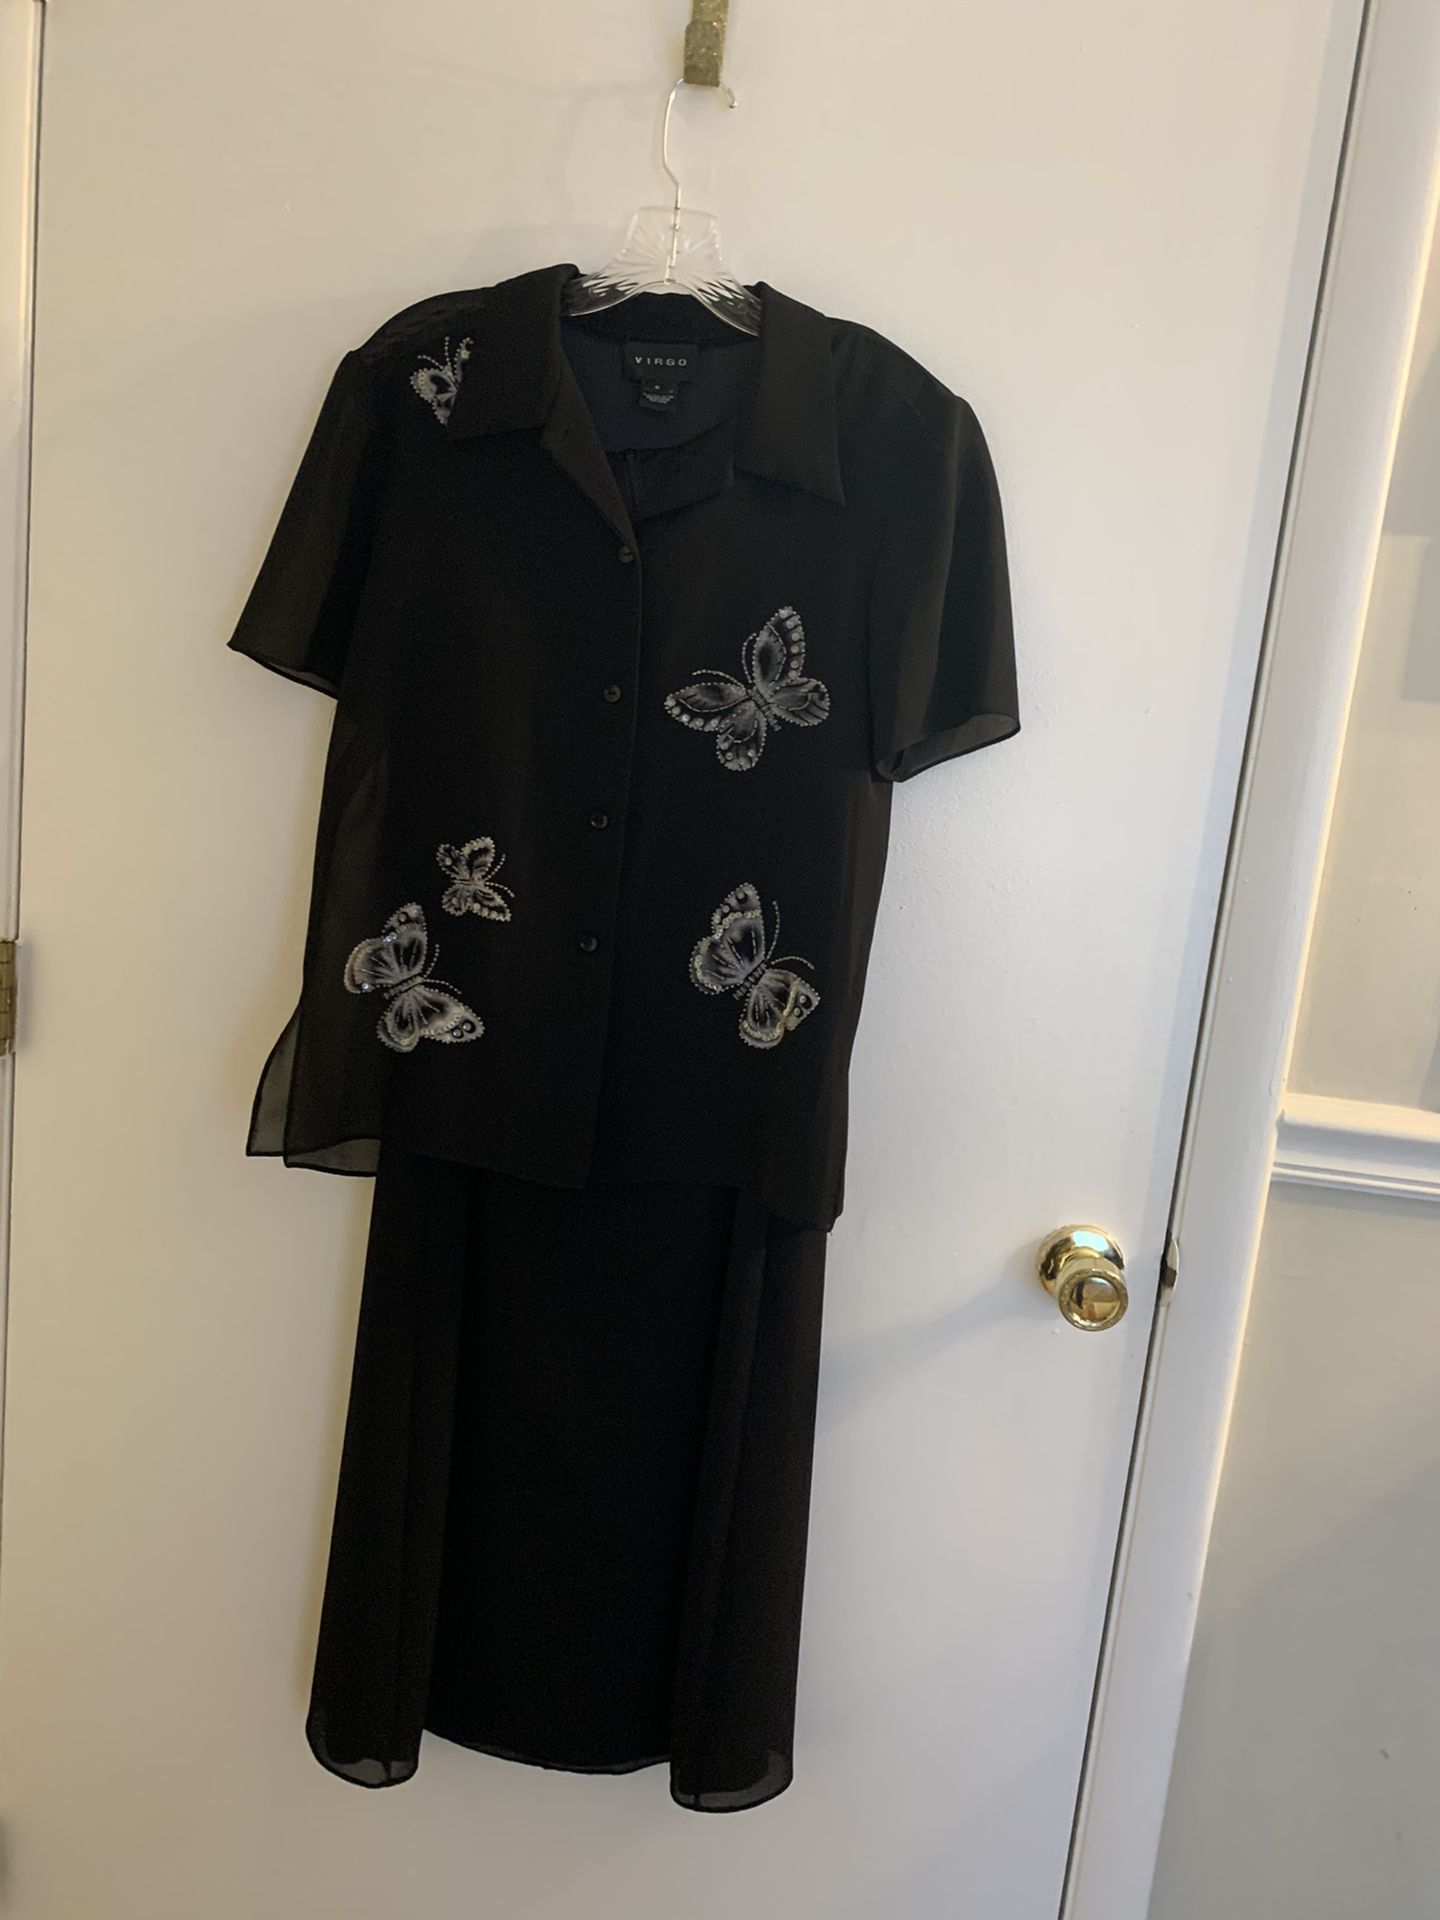 Virgo Size 8 Black Dress & Sheer Blouse